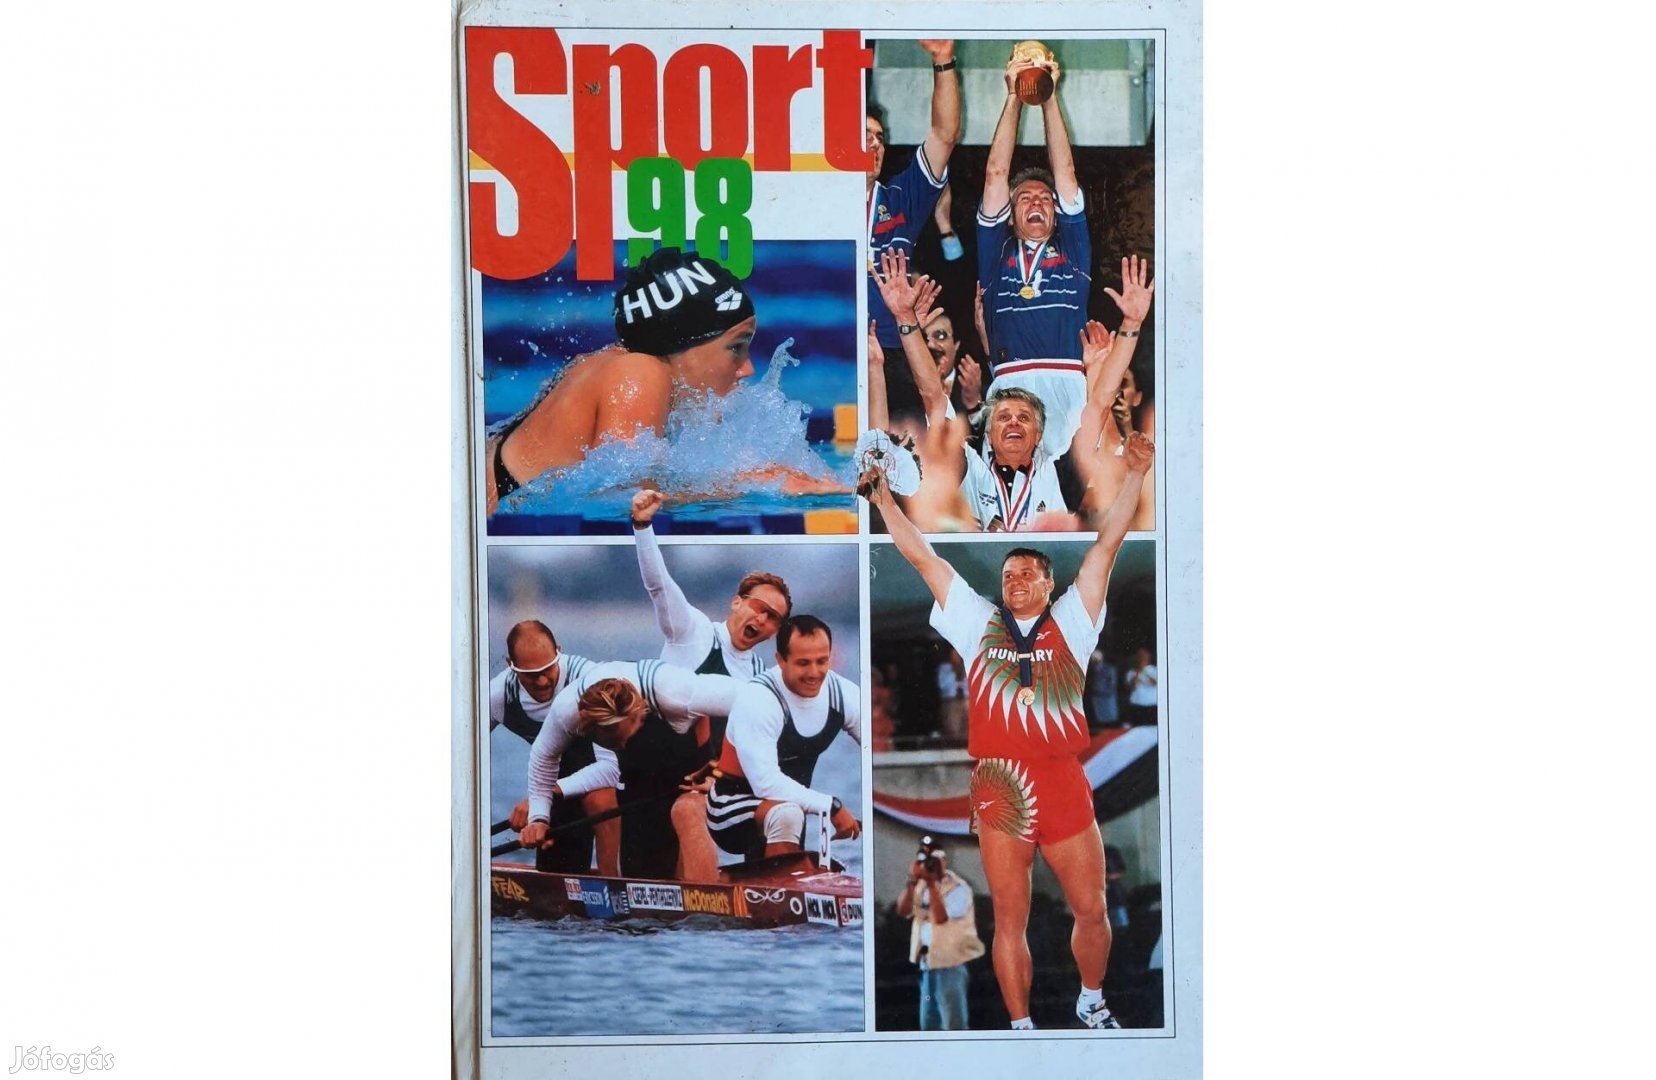 Sport 98 című könyv eladó